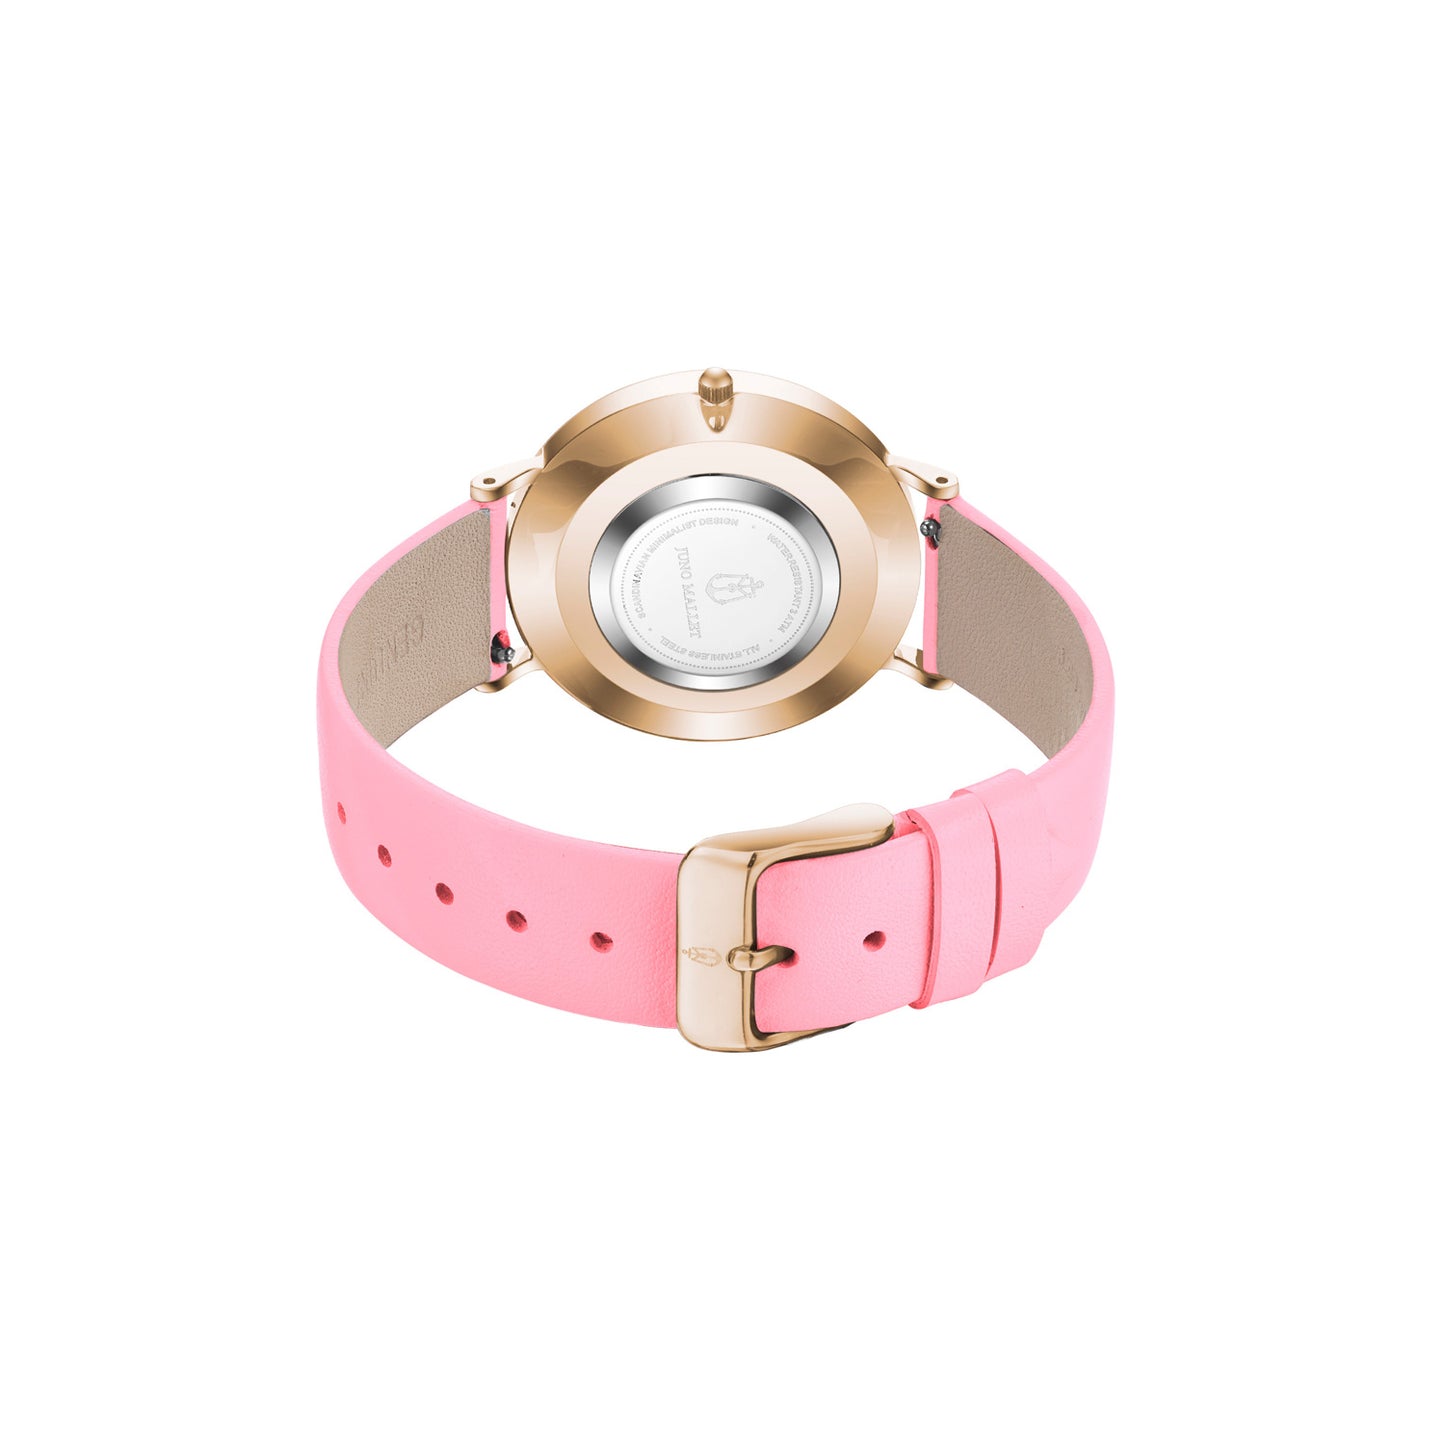 Lollipop / Flamingo Pink / Snow White / 36mm / Women Bracelet Watch